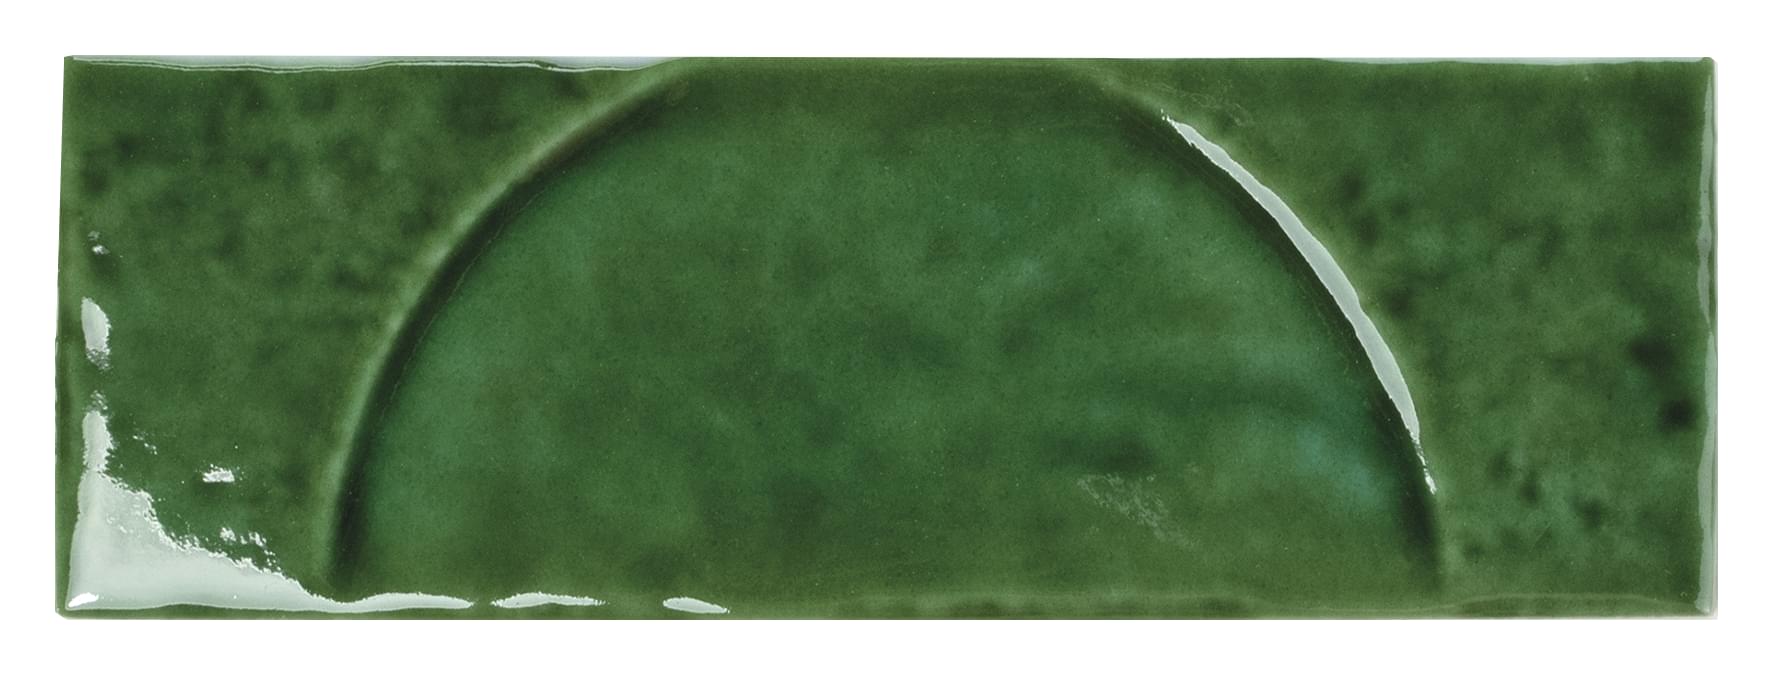 Decor Emerald 5x15